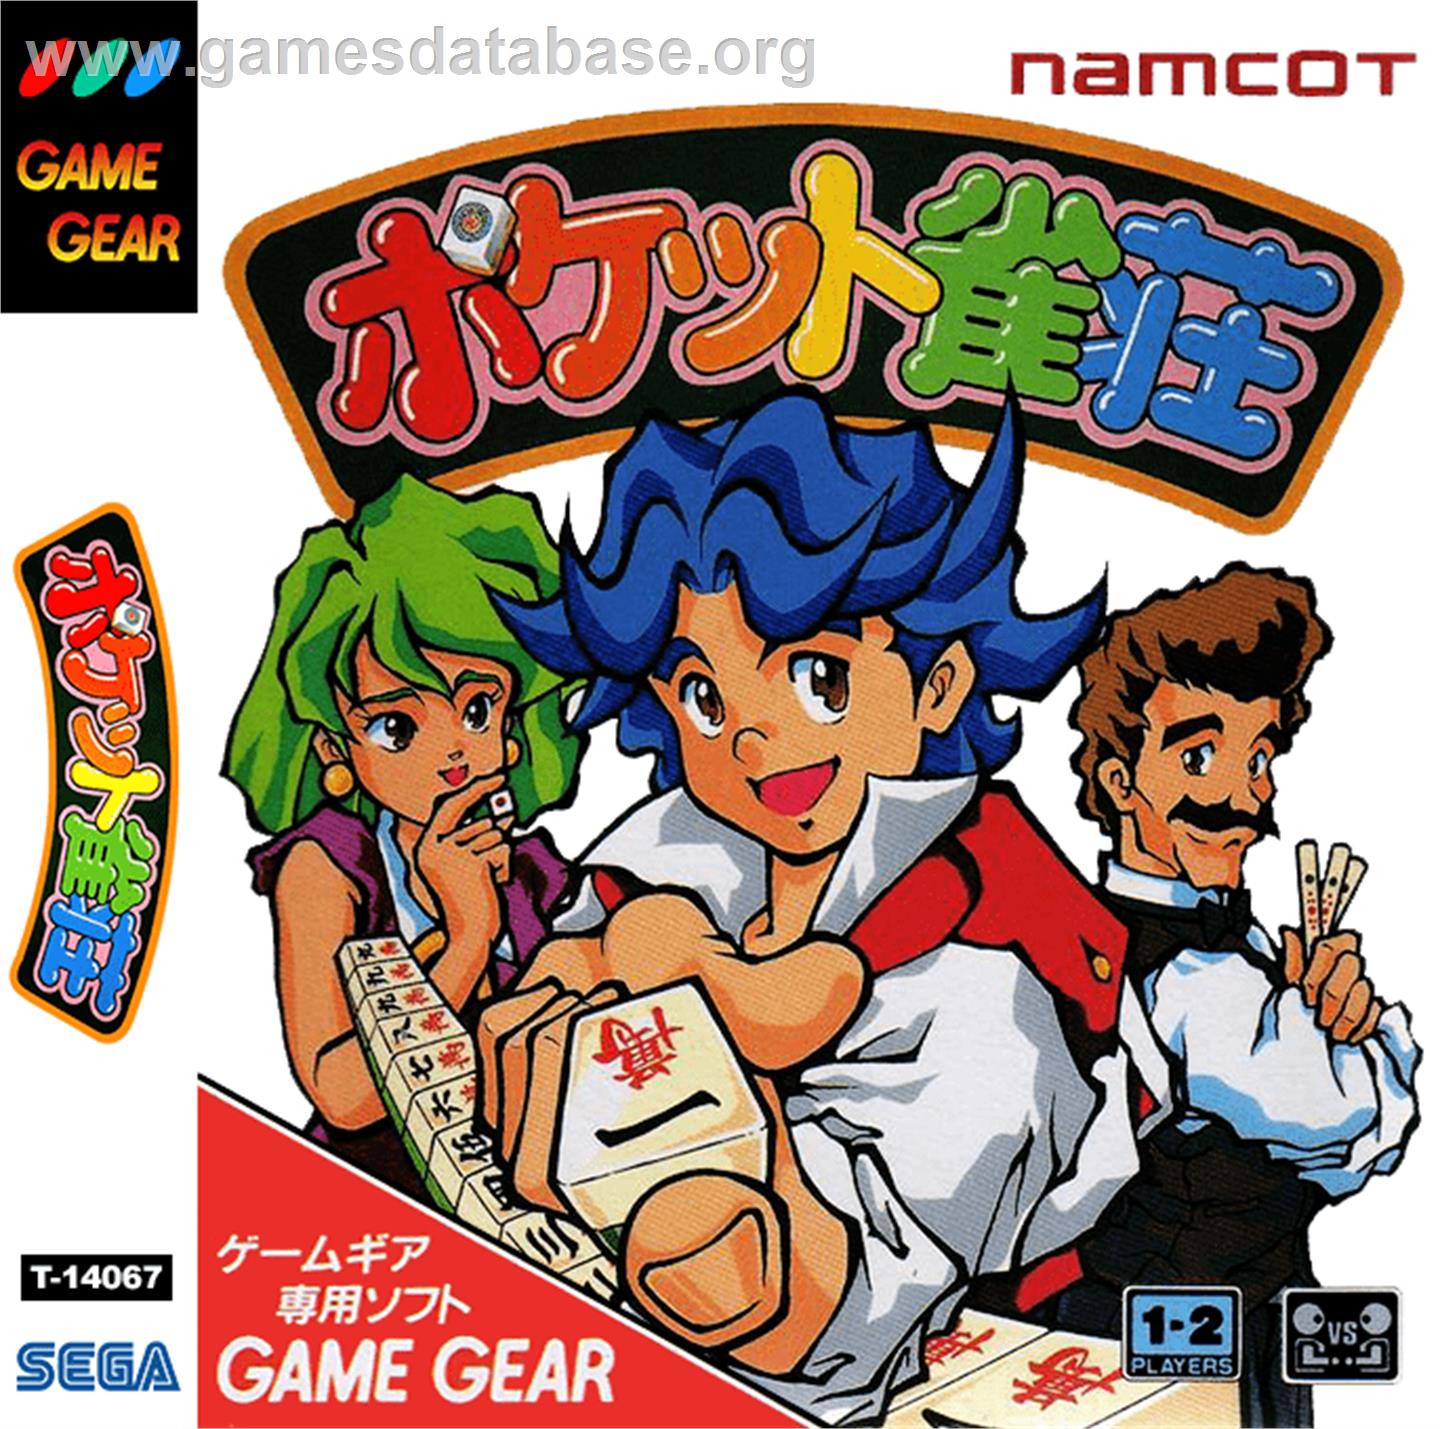 Pocket Jansou - Sega Game Gear - Artwork - Box